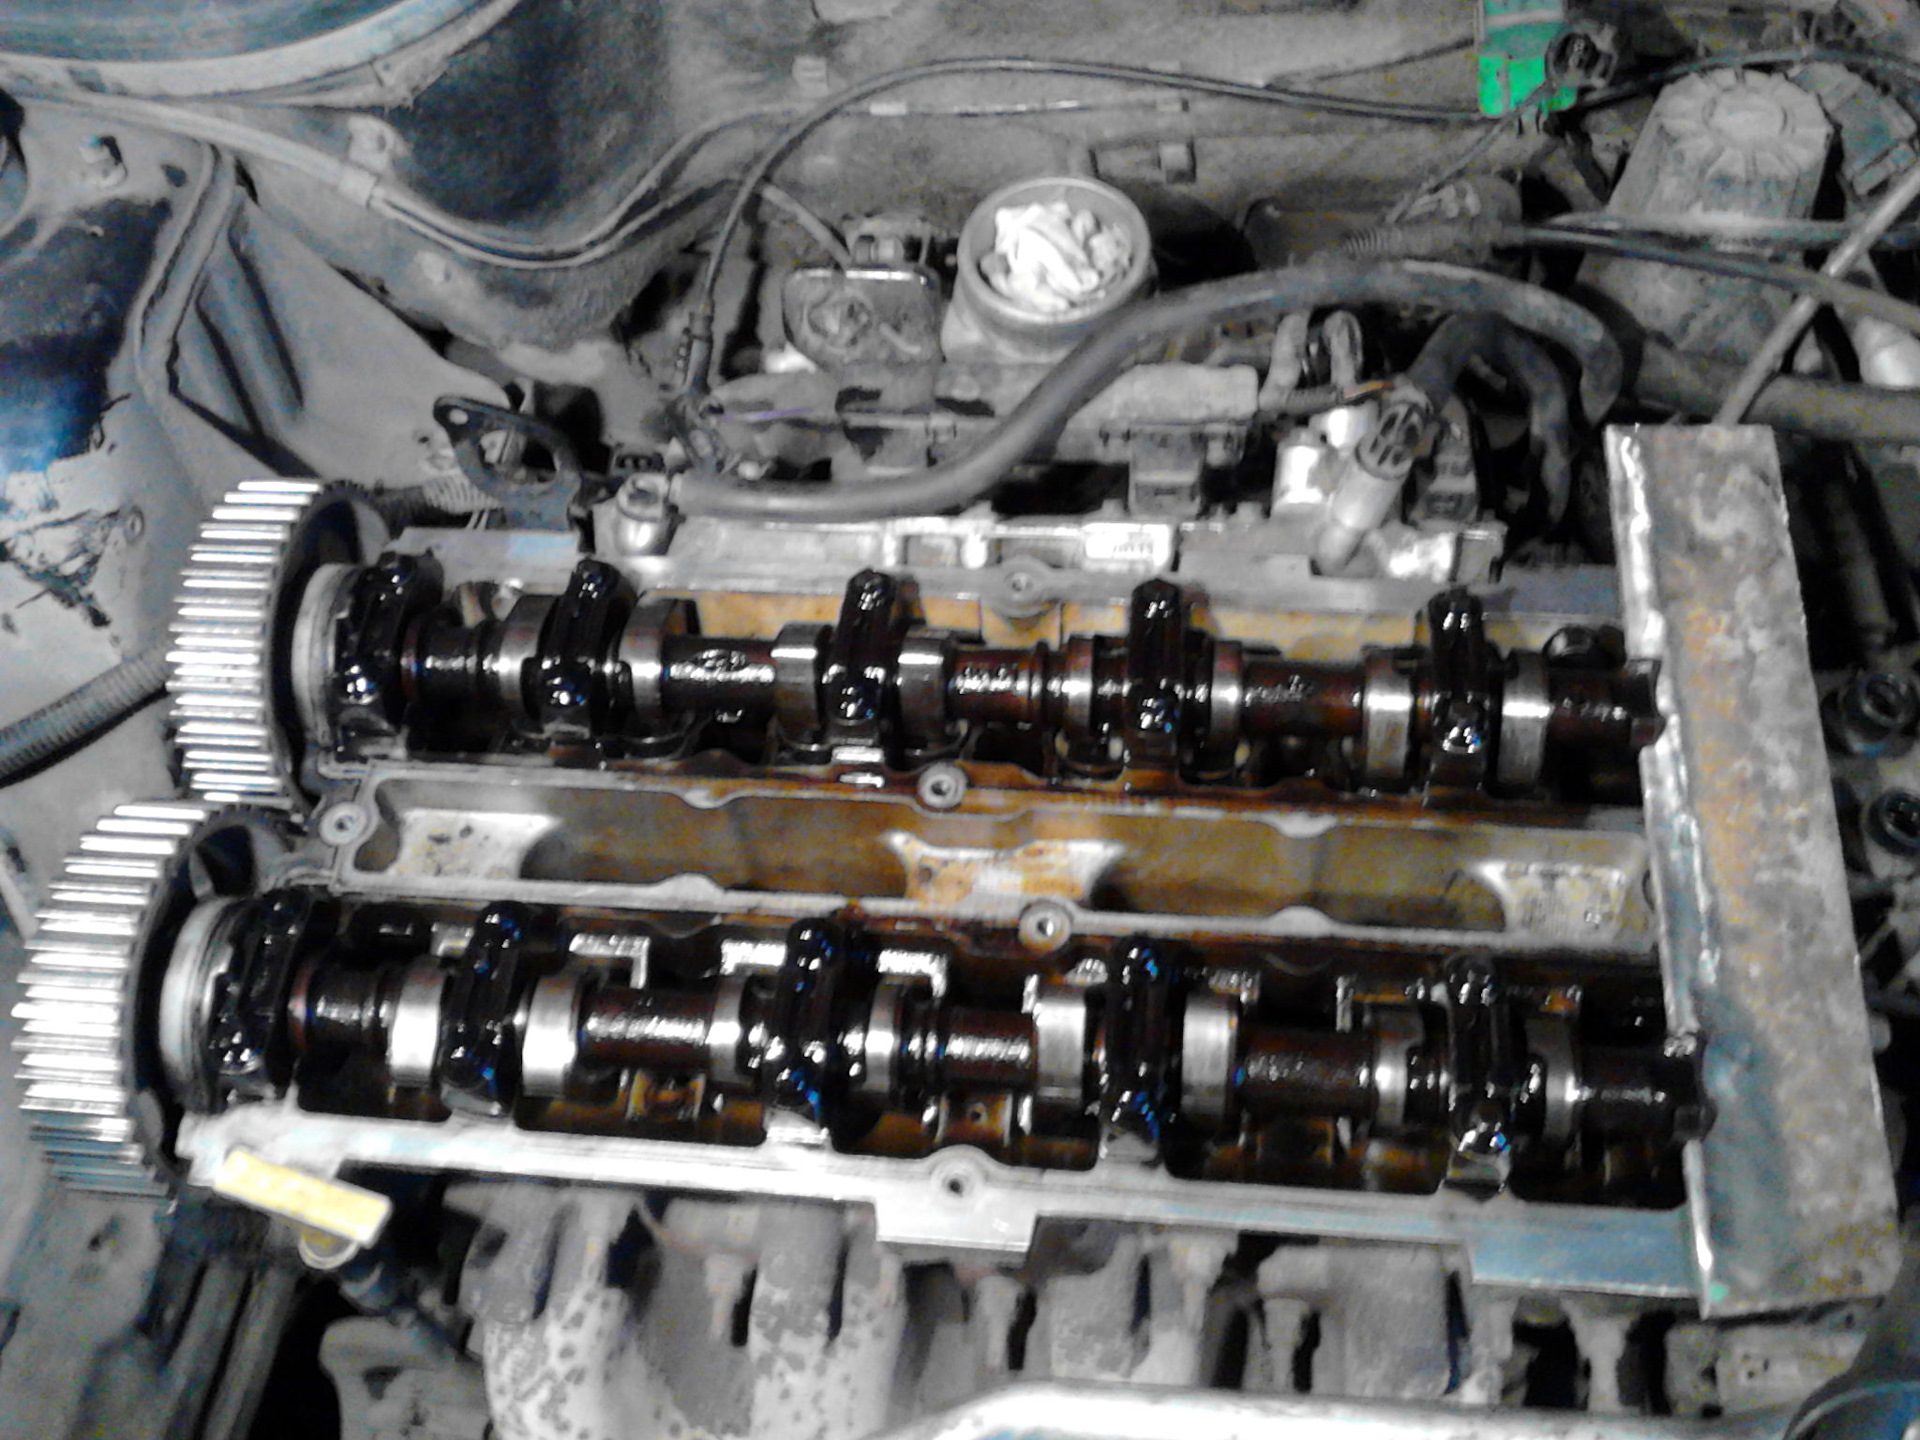 Капитальный ремонт двигателя фокус. Ford Mondeo 1.6 распредвалы. 2.0 16v Zetec-e распредвалы. Гидрокомпенсаторы на Форд фокус 2 двигатель 1.6. Форд фокус 3 1.6 гидрокомпенсаторы.